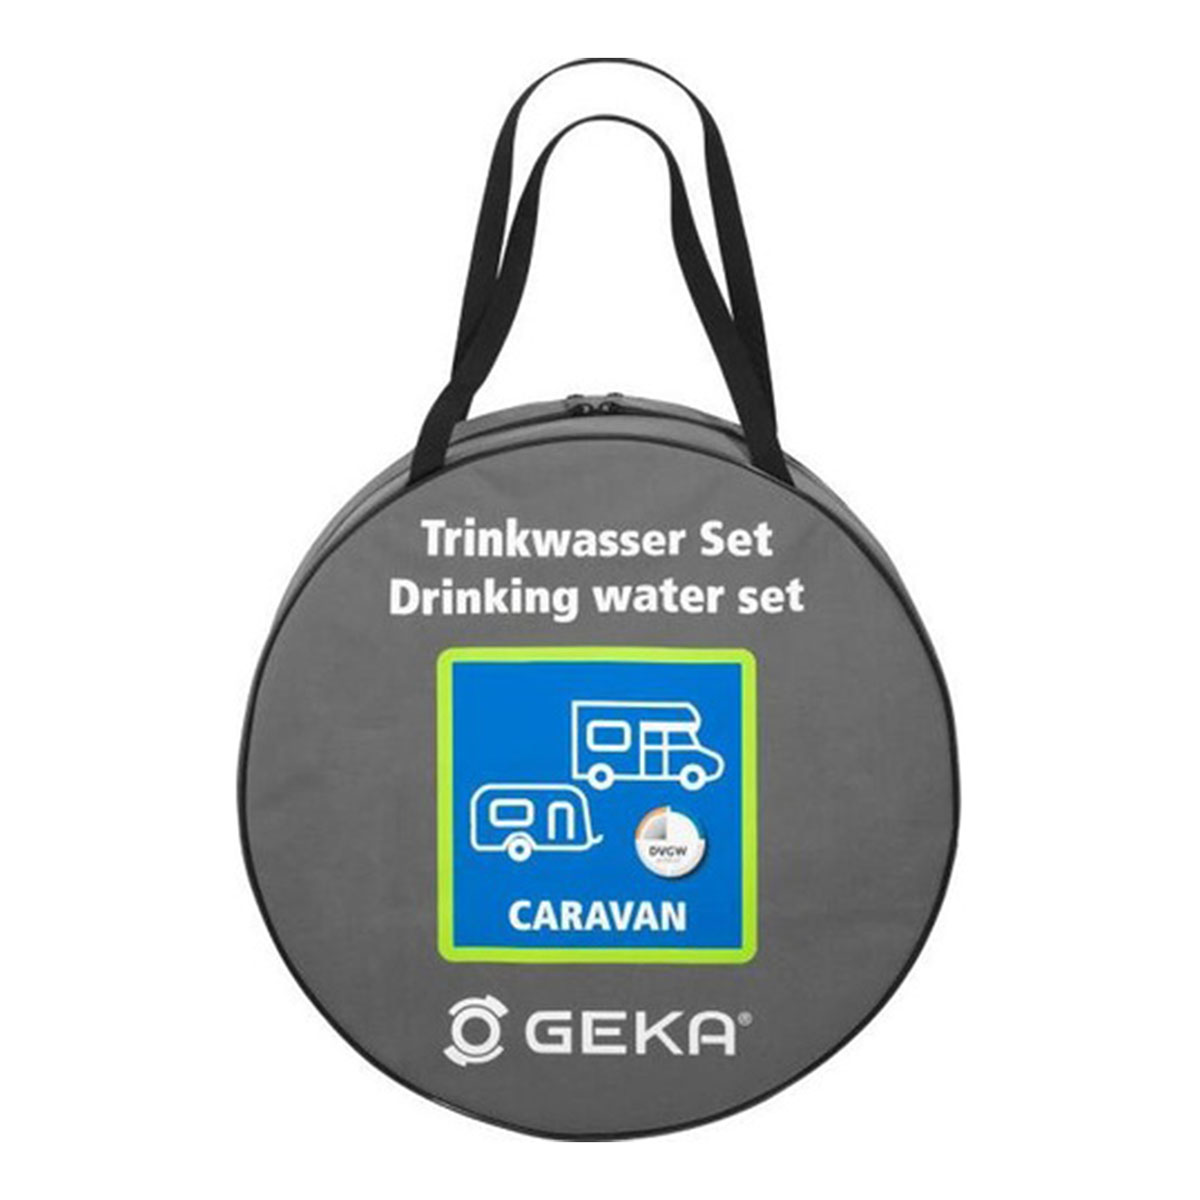 Trinkwasser-Set Caravan 5m GEKA plus